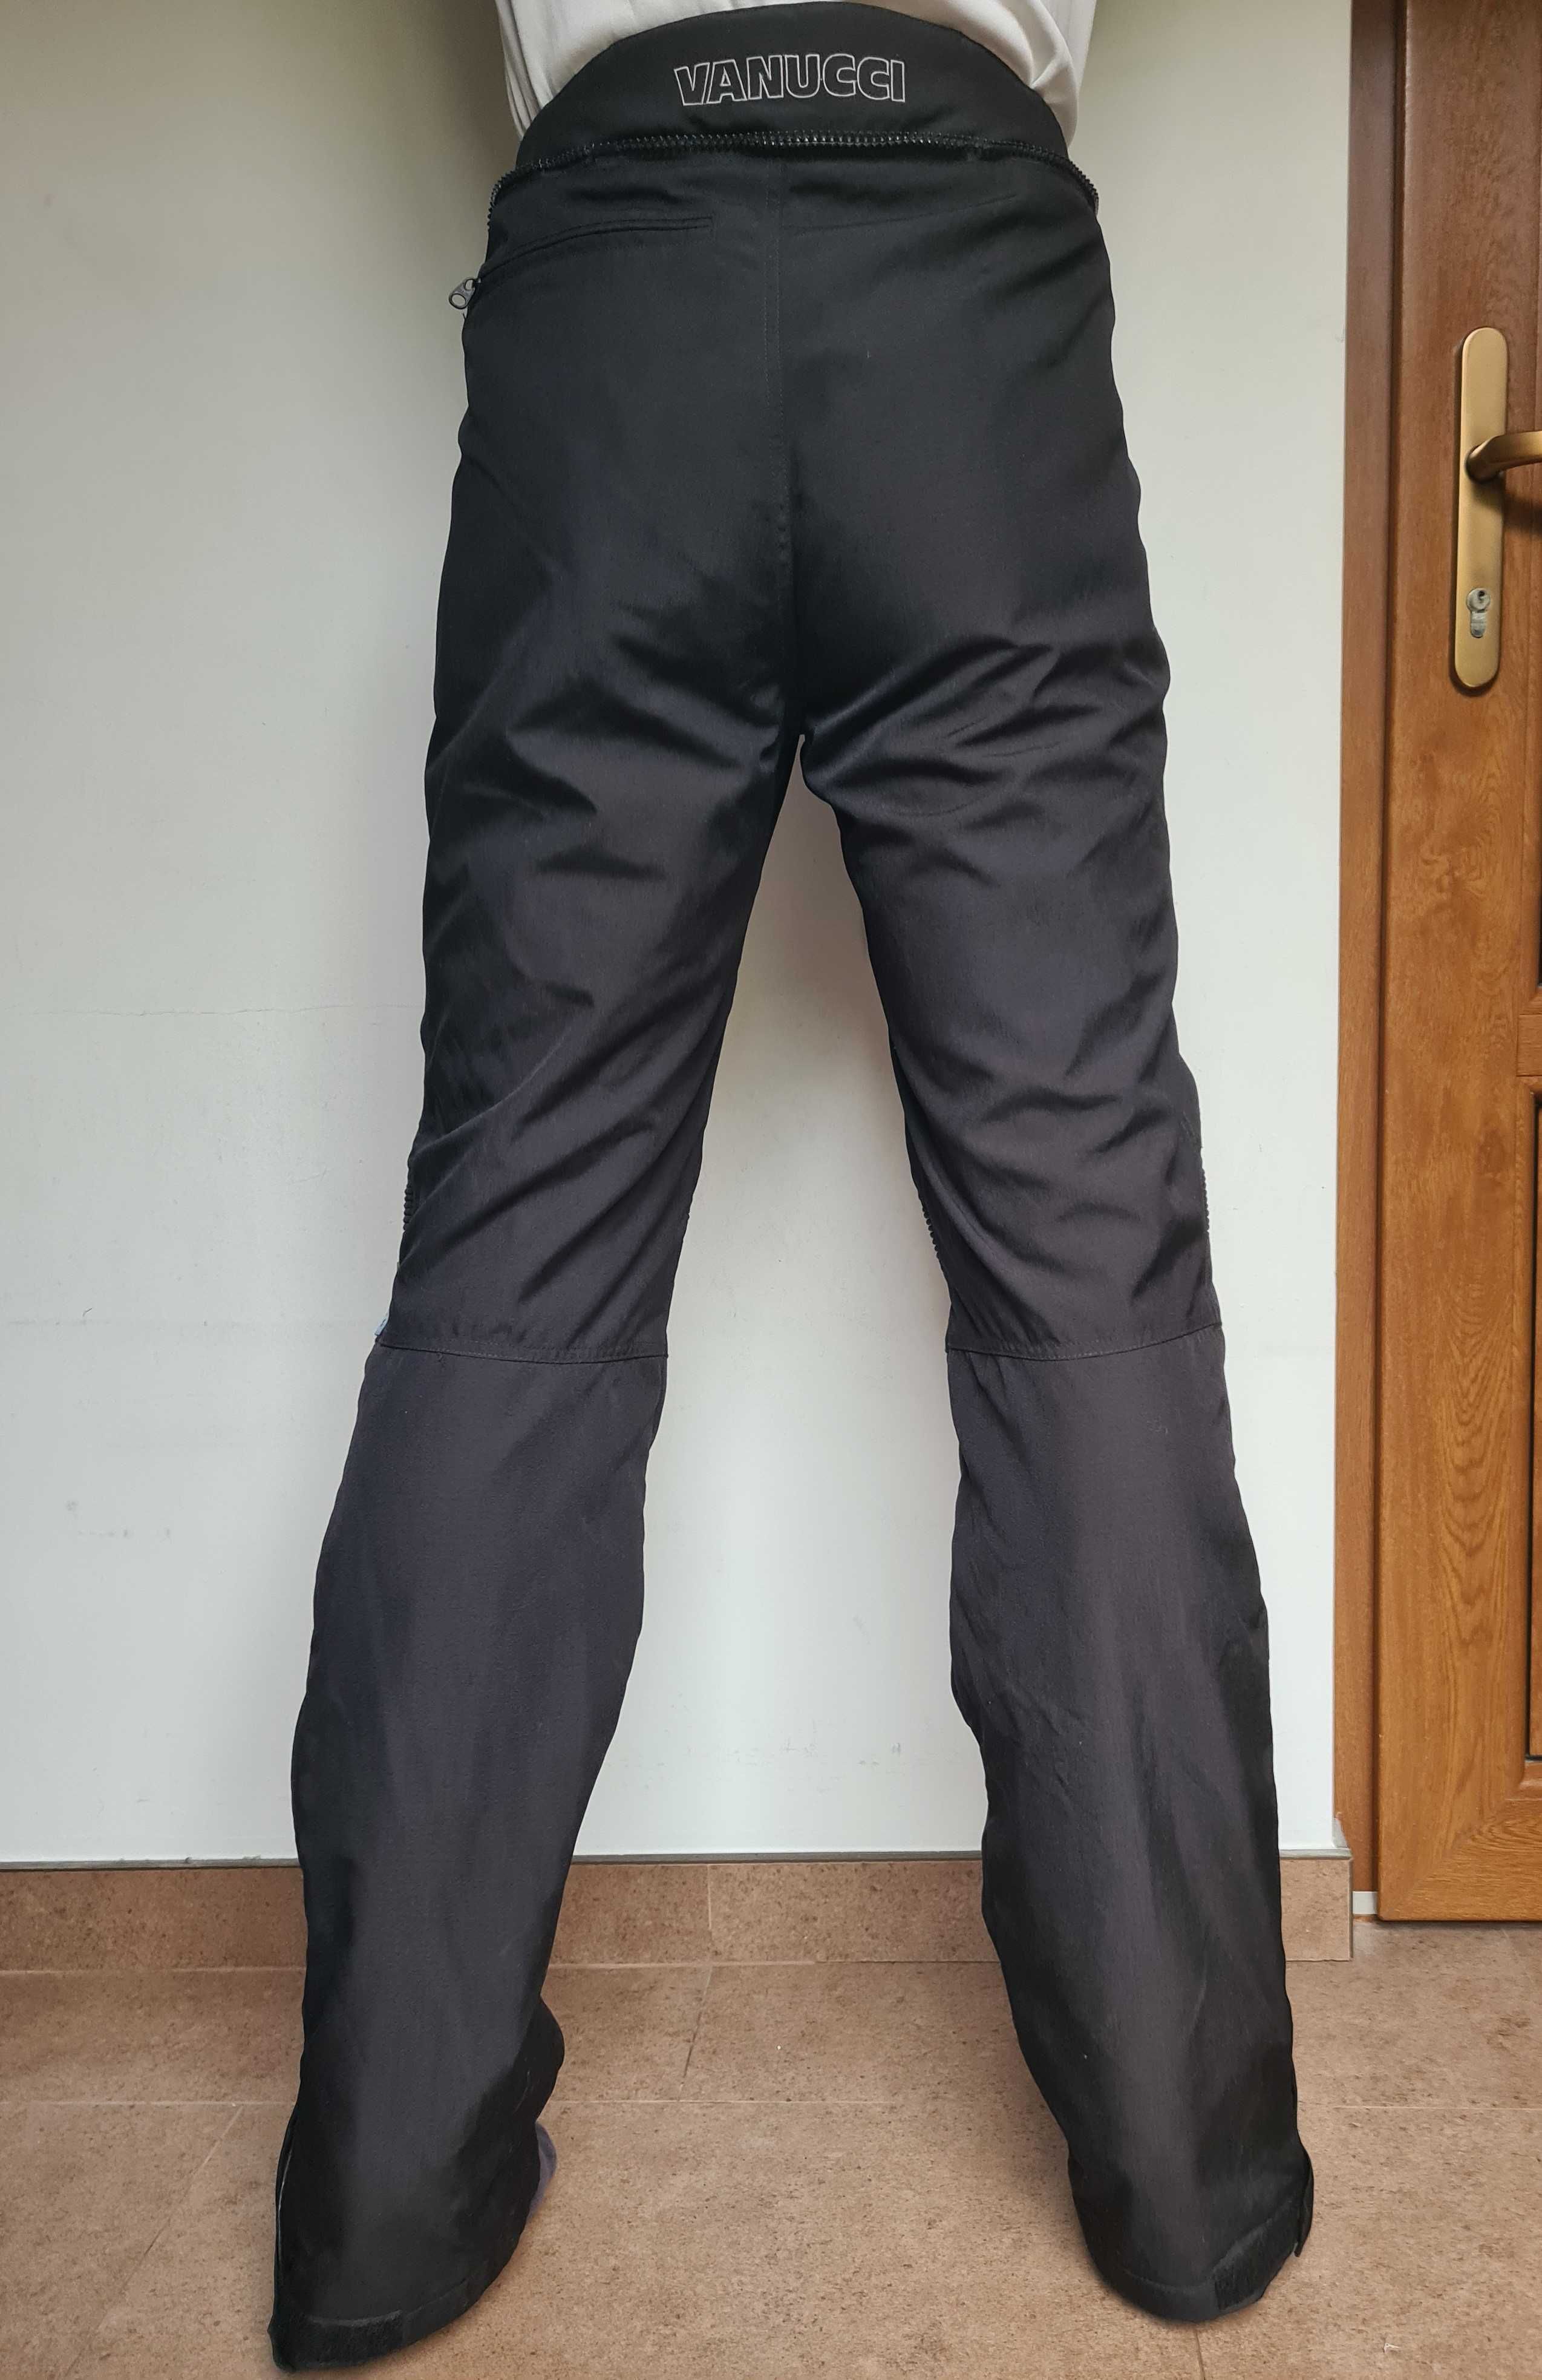 Pantaloni Moto VANUCCI - mărime XL - stare IMPECABILĂ!